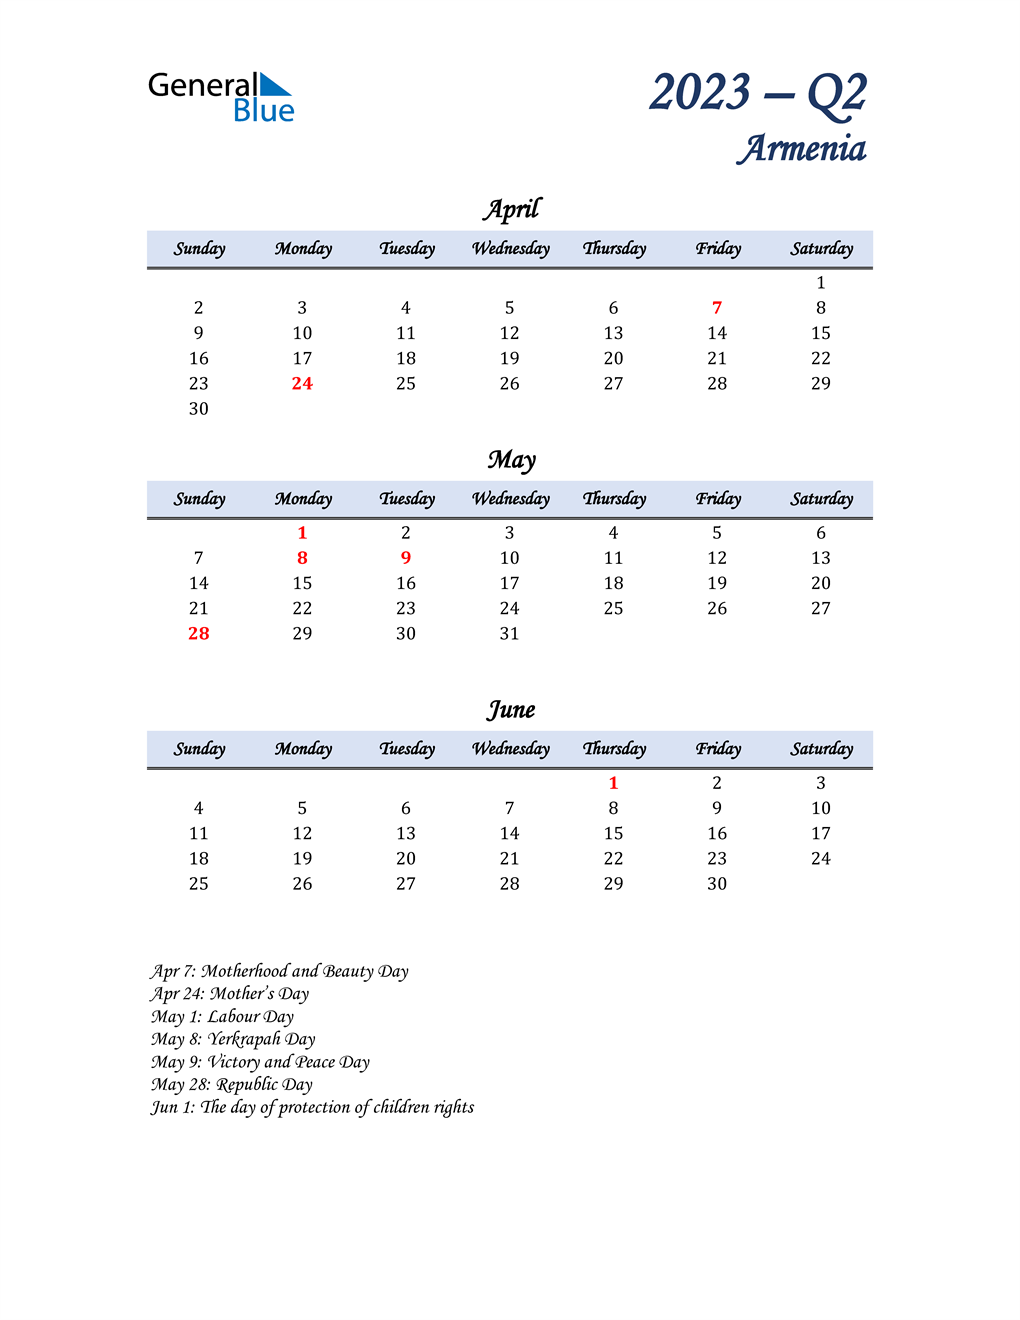  April, May, and June Calendar for Armenia